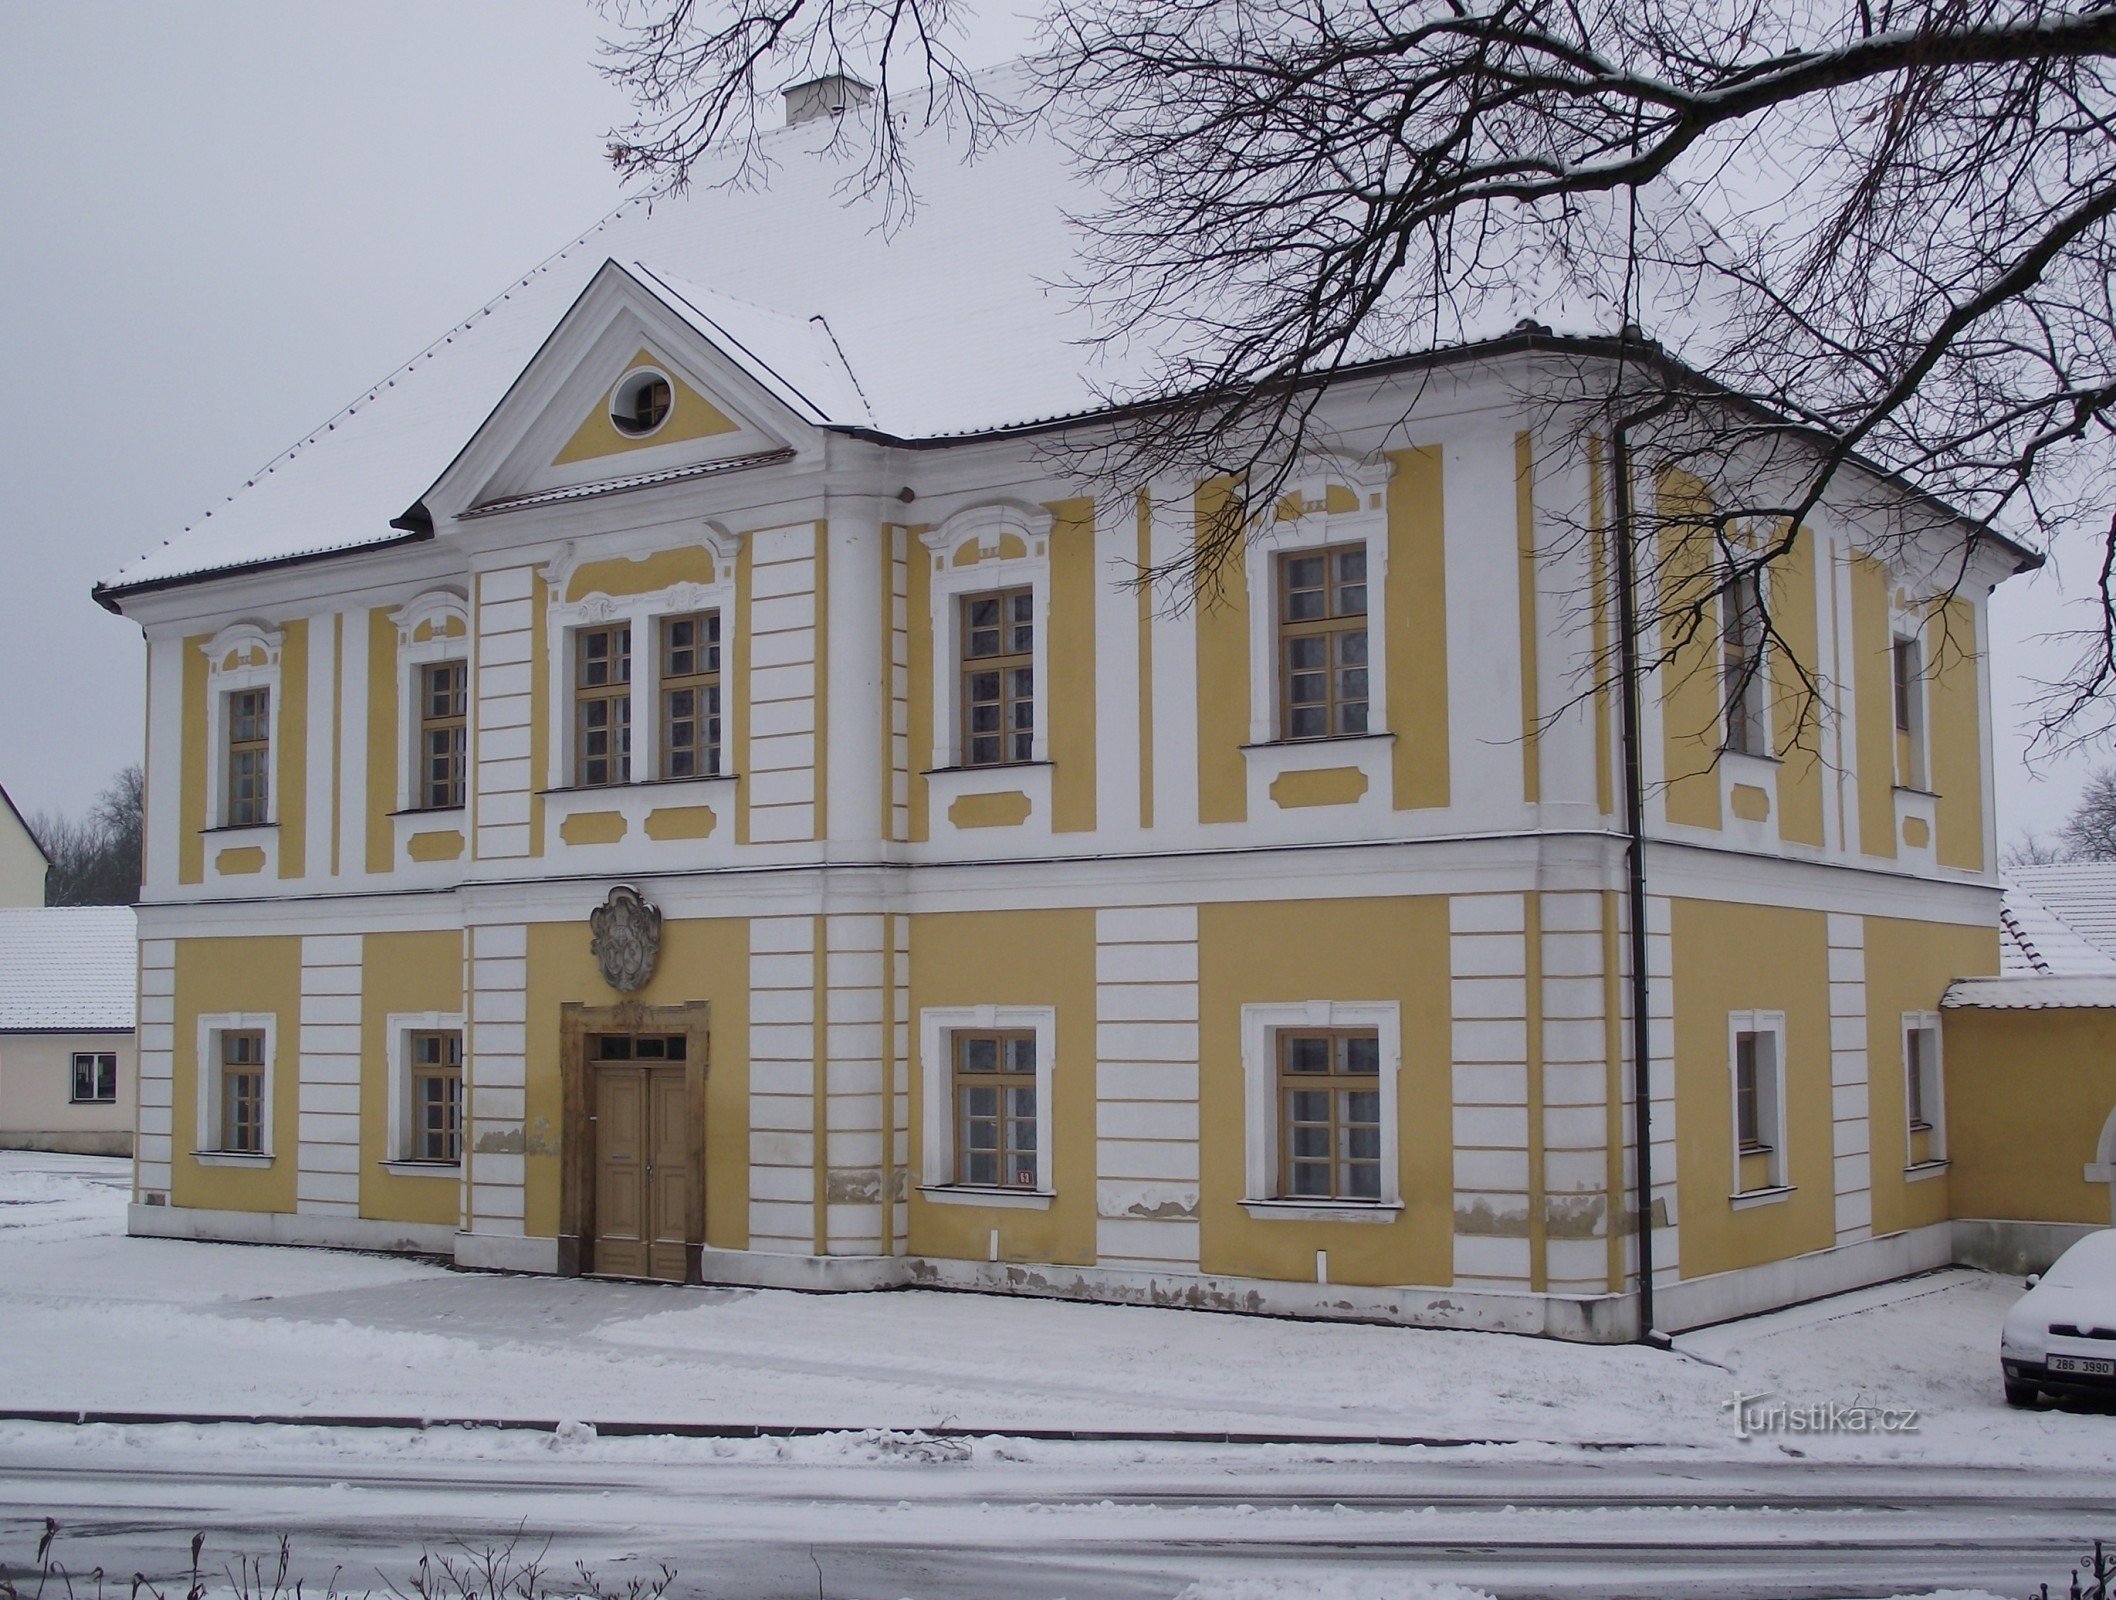 チェトコヴィツェの修道院長の邸宅